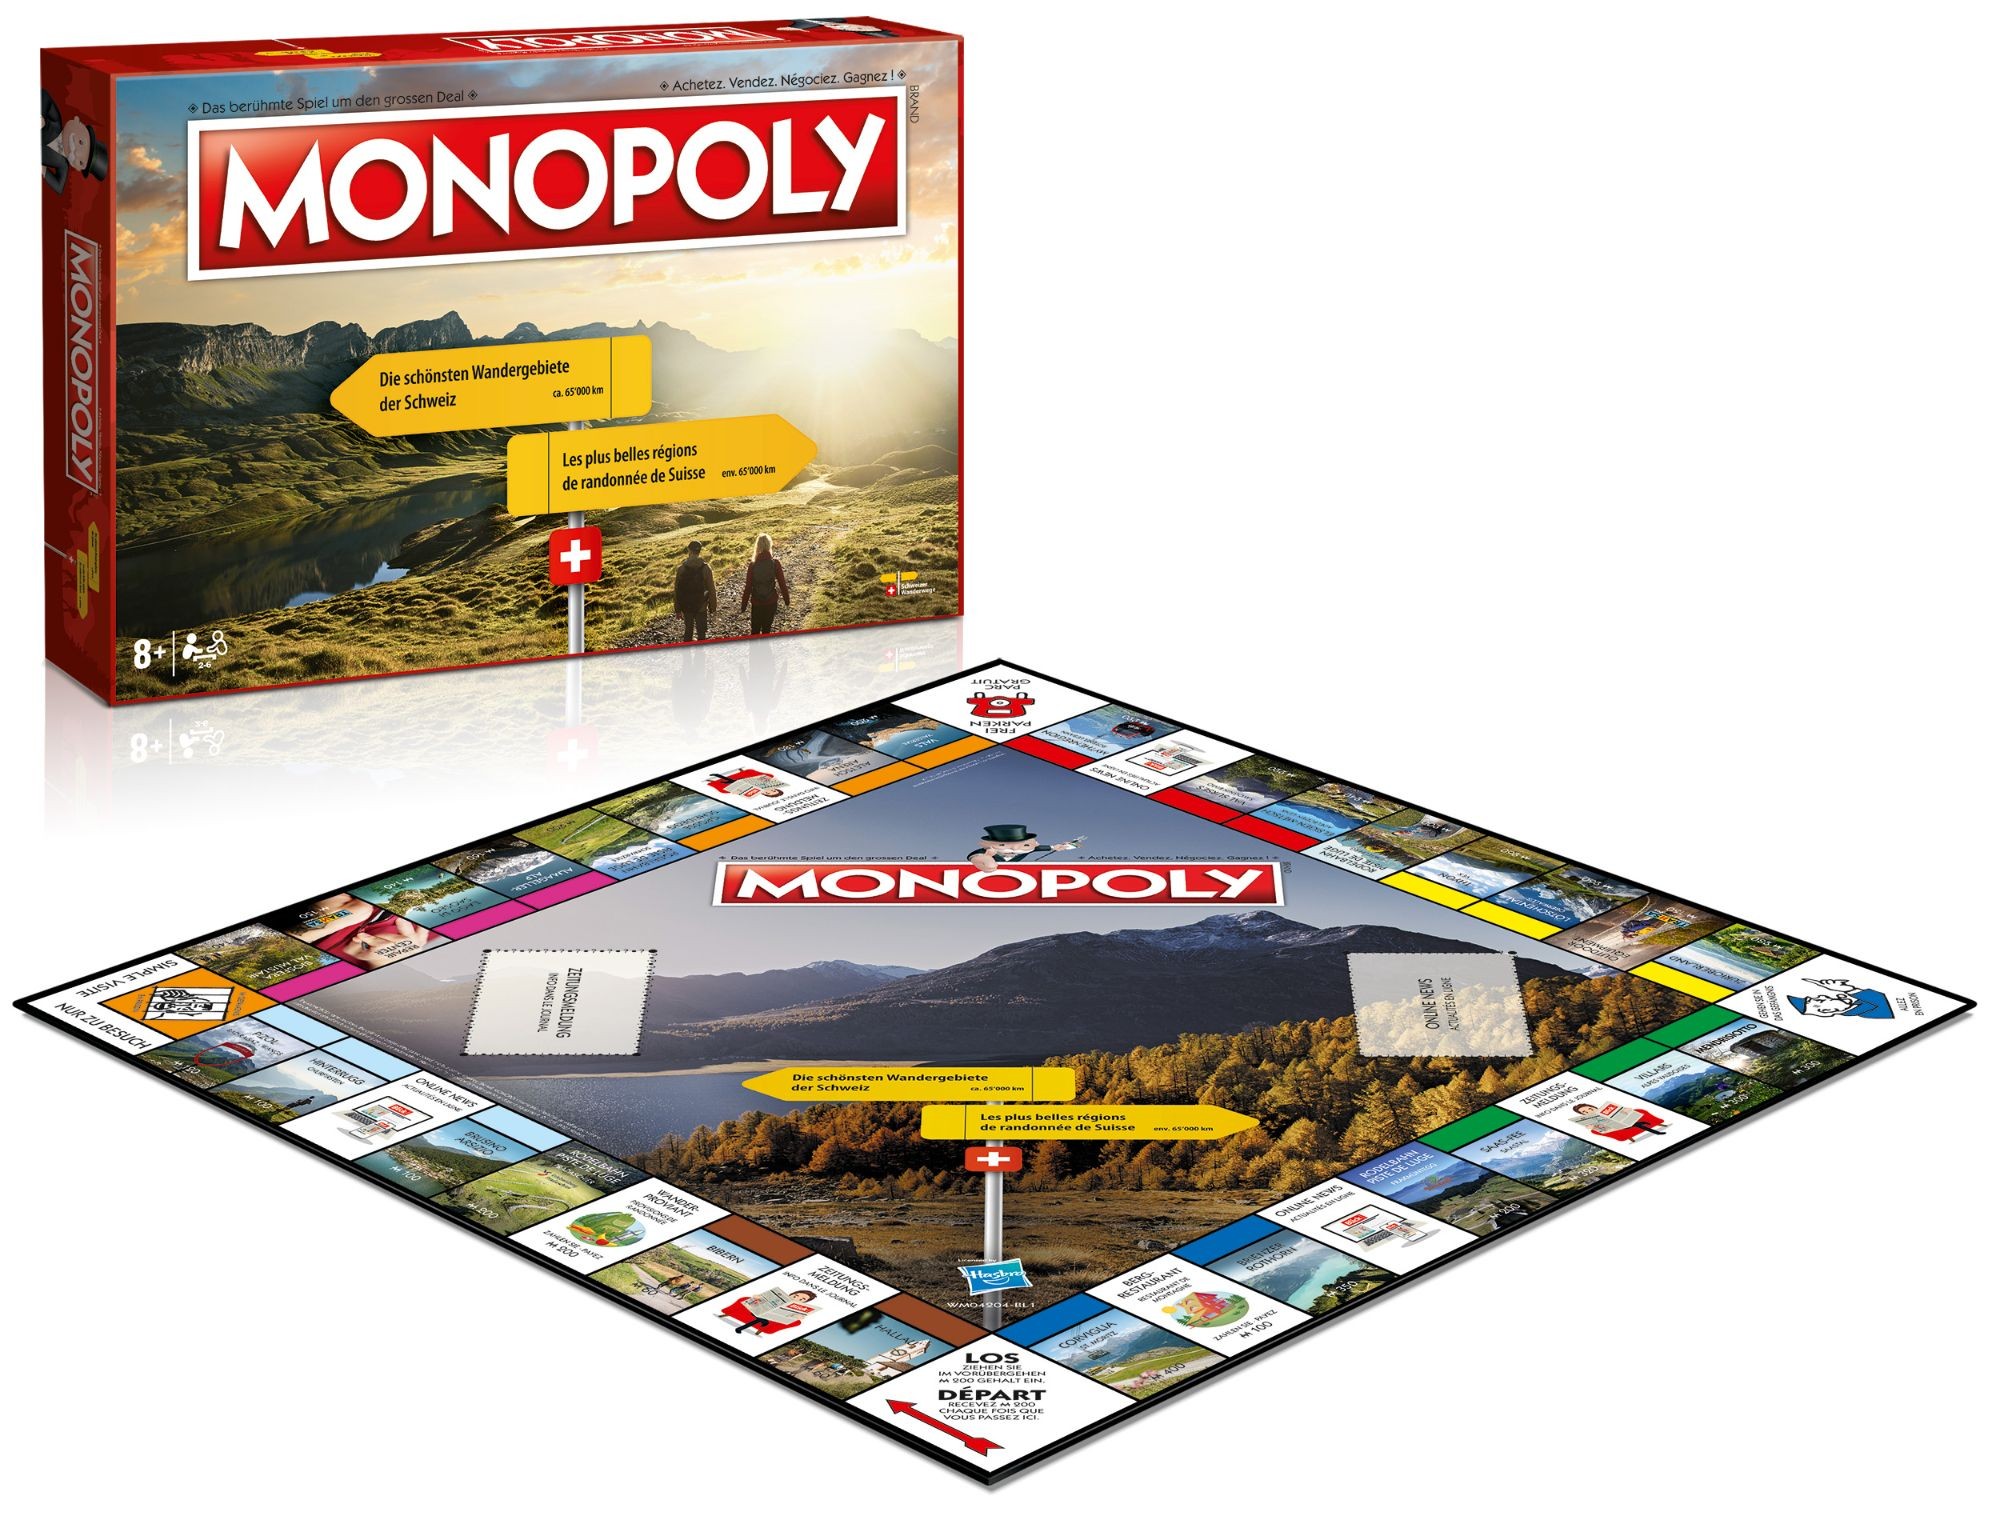 Monopoly - Die schönsten Wandergebiete der Schweiz